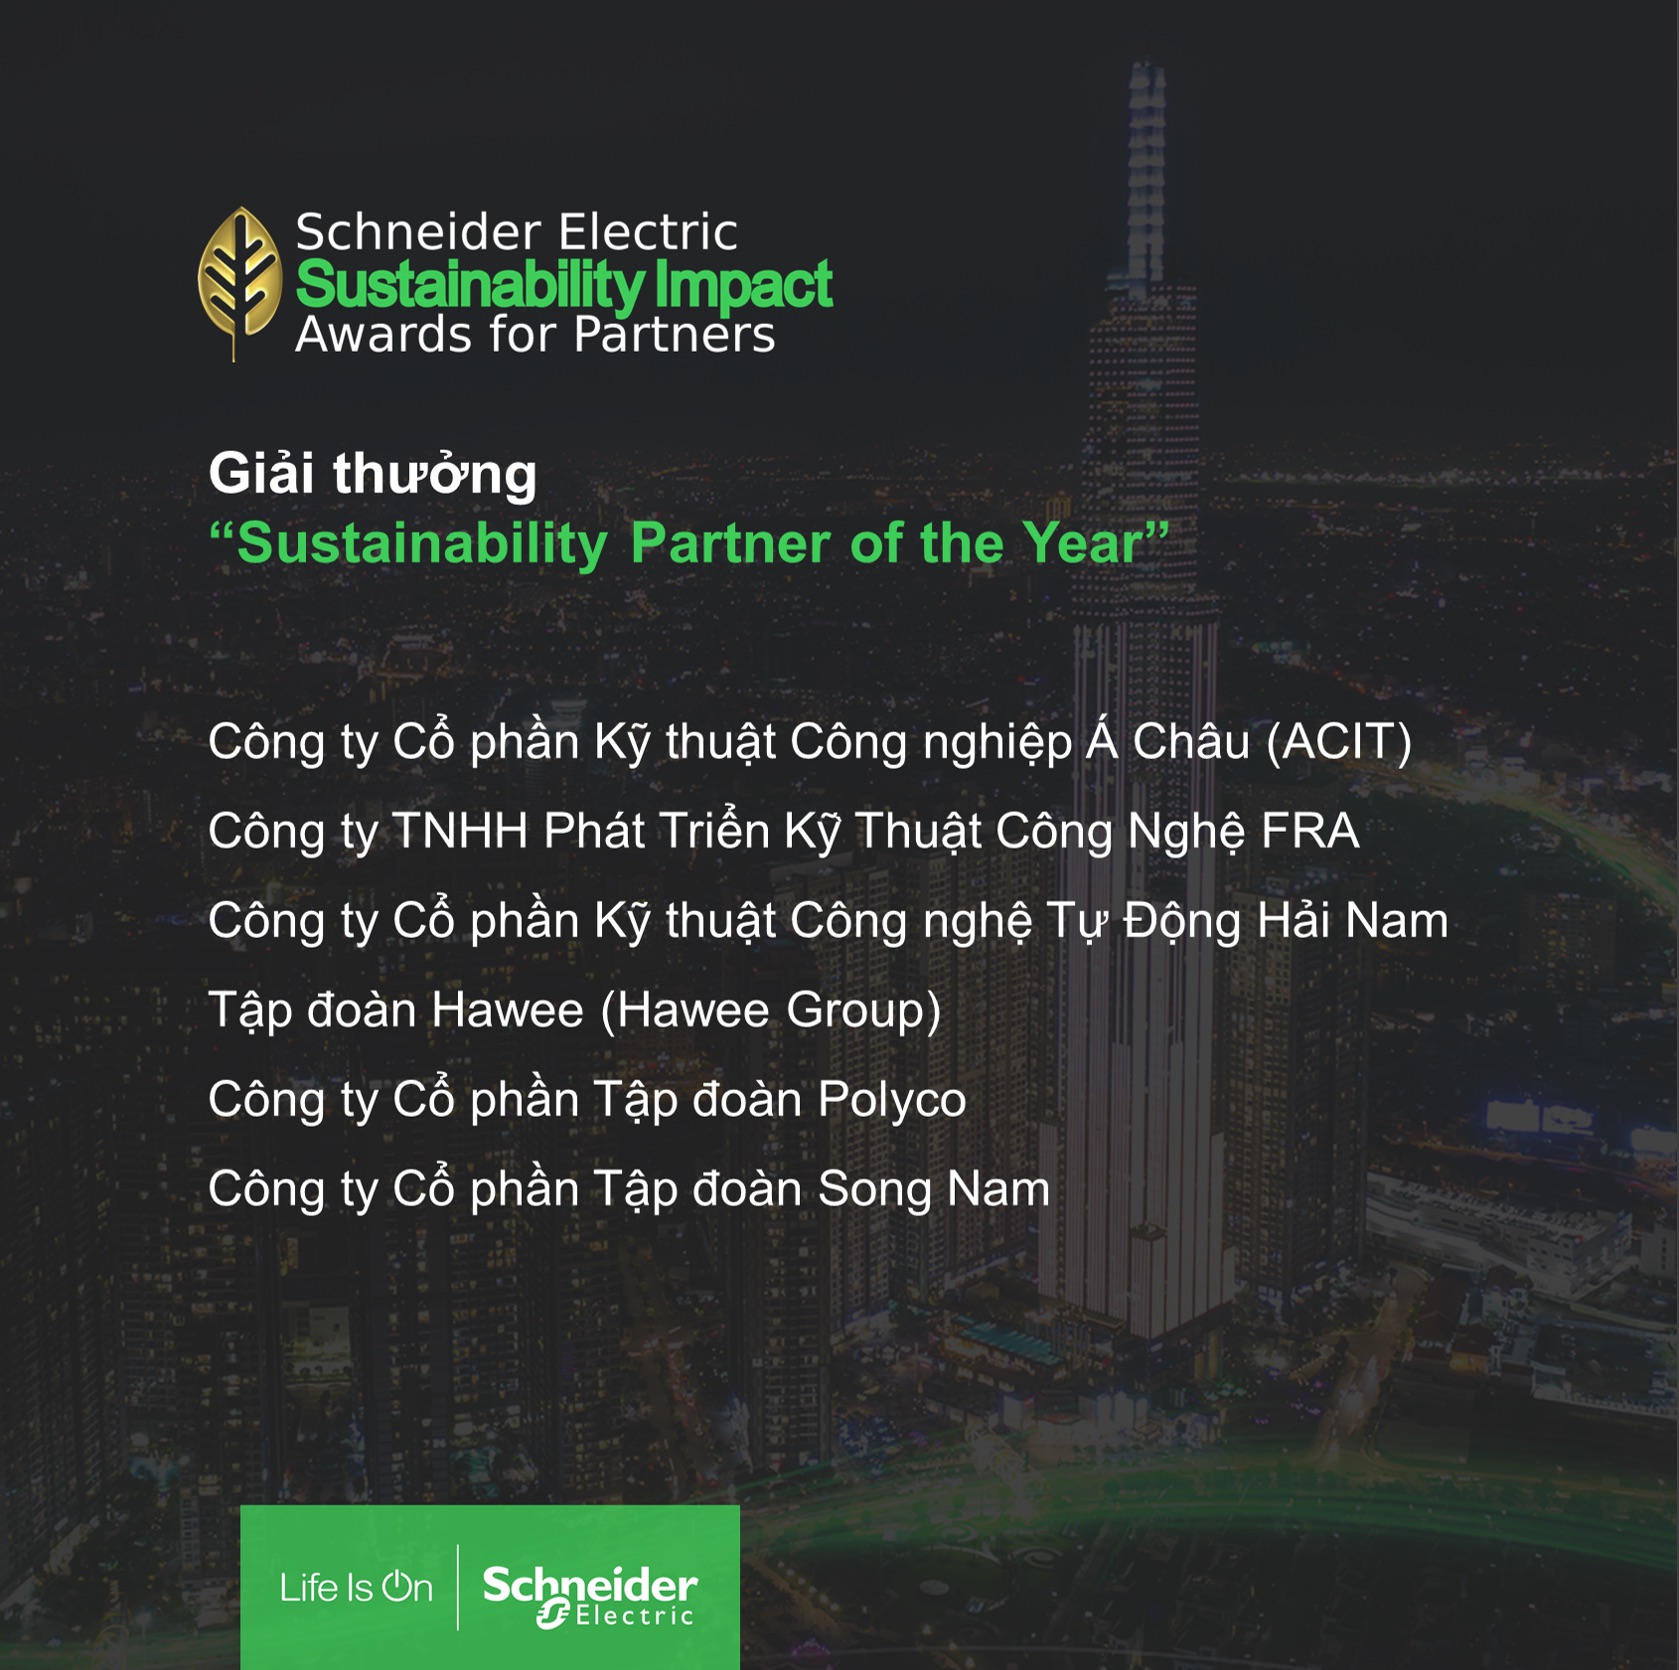 Schneider Electric vinh danh 11 "Green Heroes" chung tay đổi mới sáng tạo vì một Việt Nam phát triển bền vững